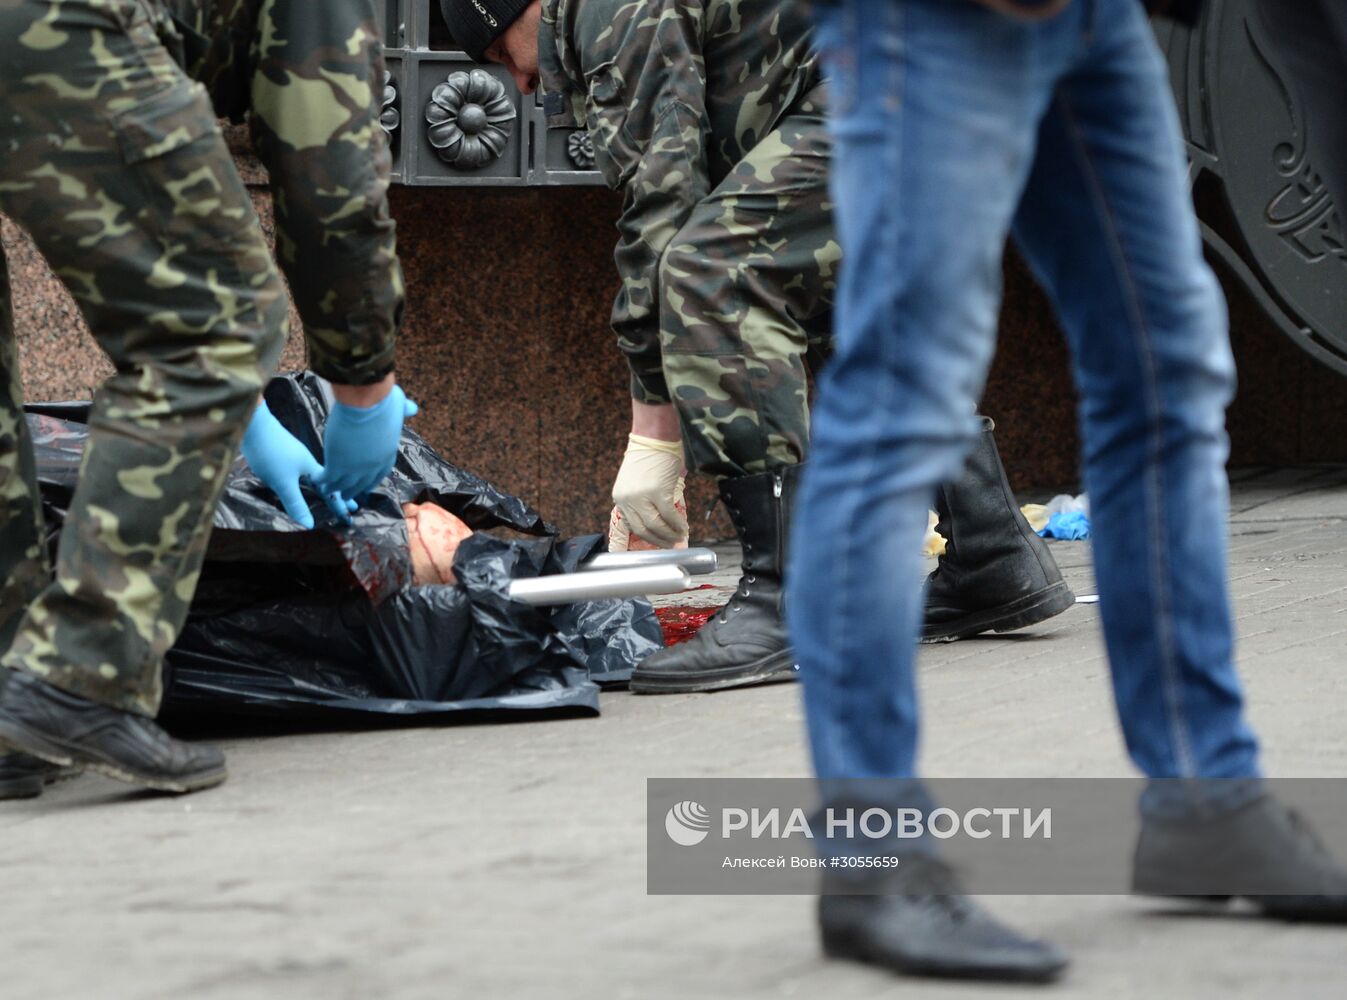 Экс-депутат Госдумы Вороненков убит в Киеве